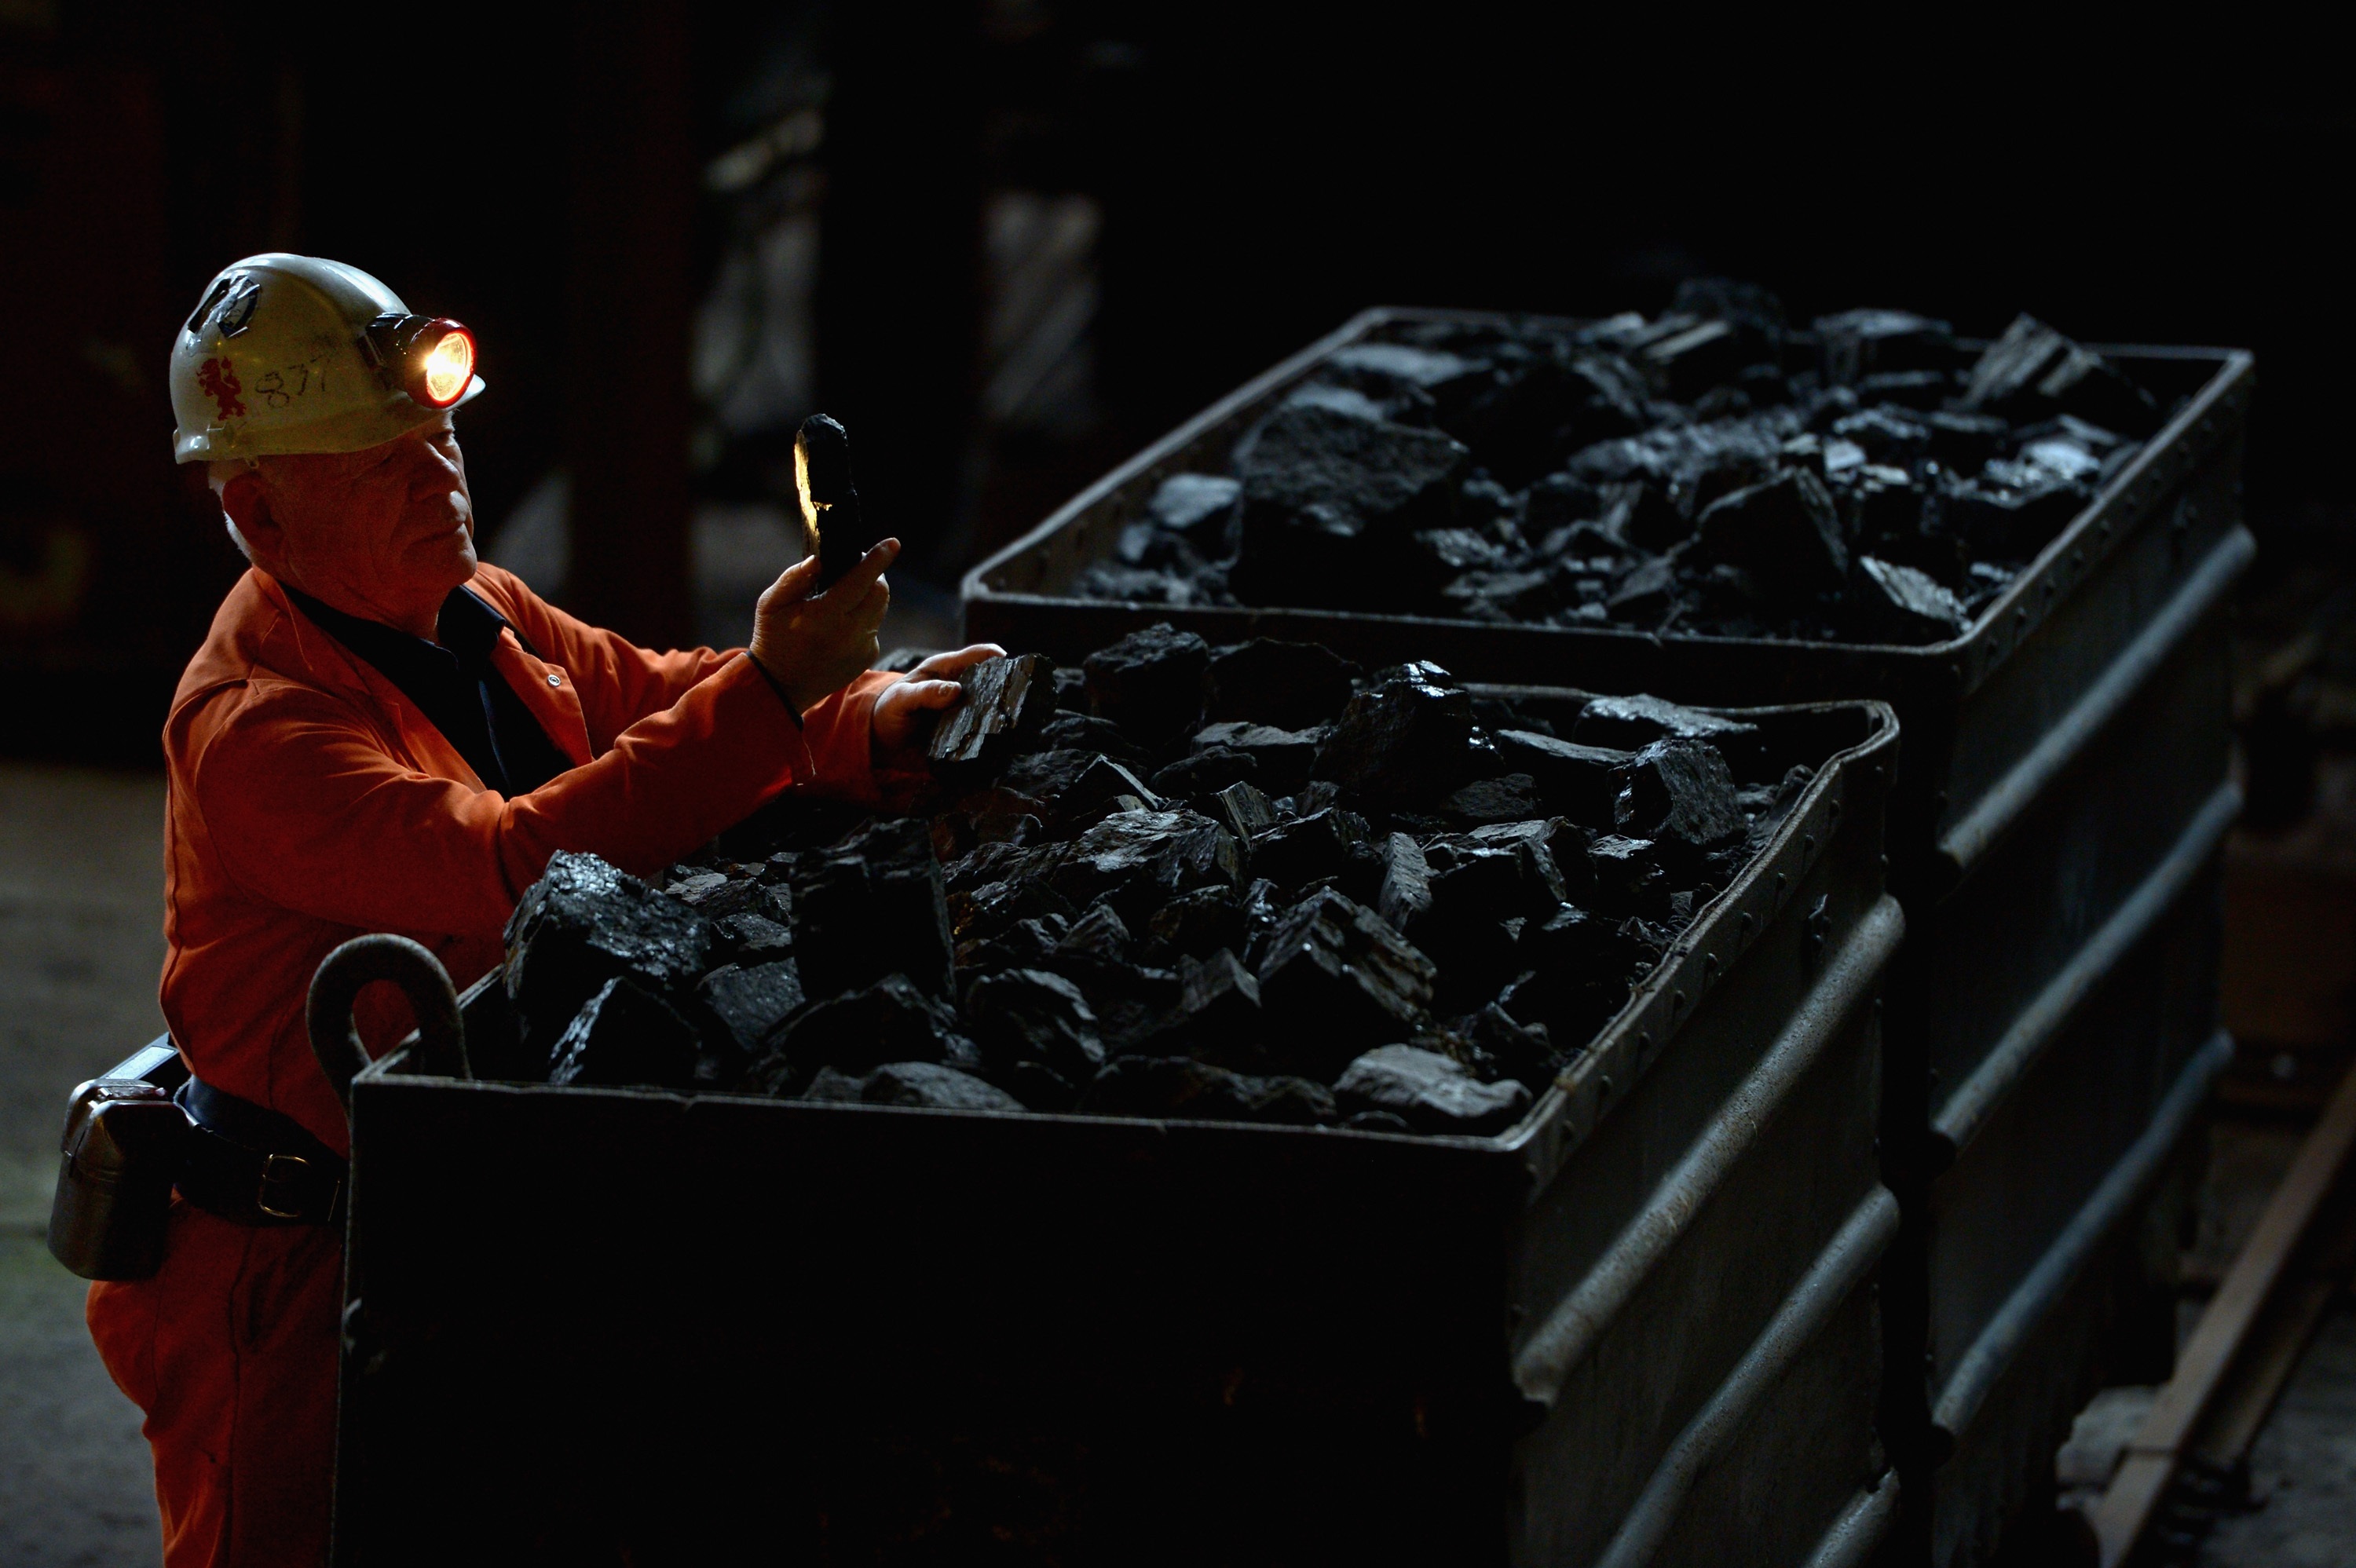 “Taş kömürü hala dünya sanayisi için vazgeçilmez bir enerji kaynağıdır”